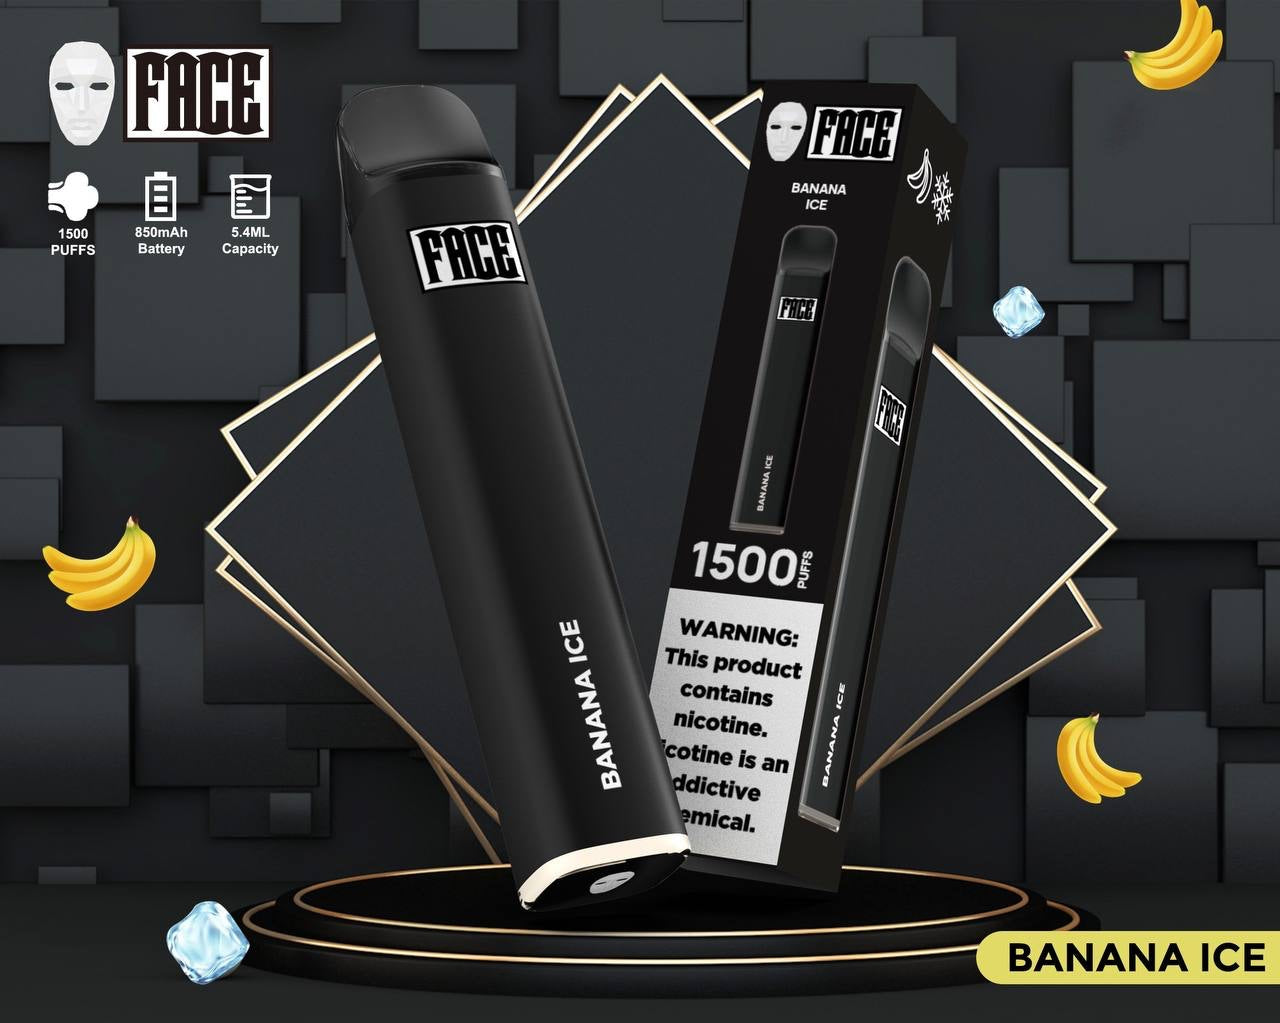 Face Banana Ice 1500